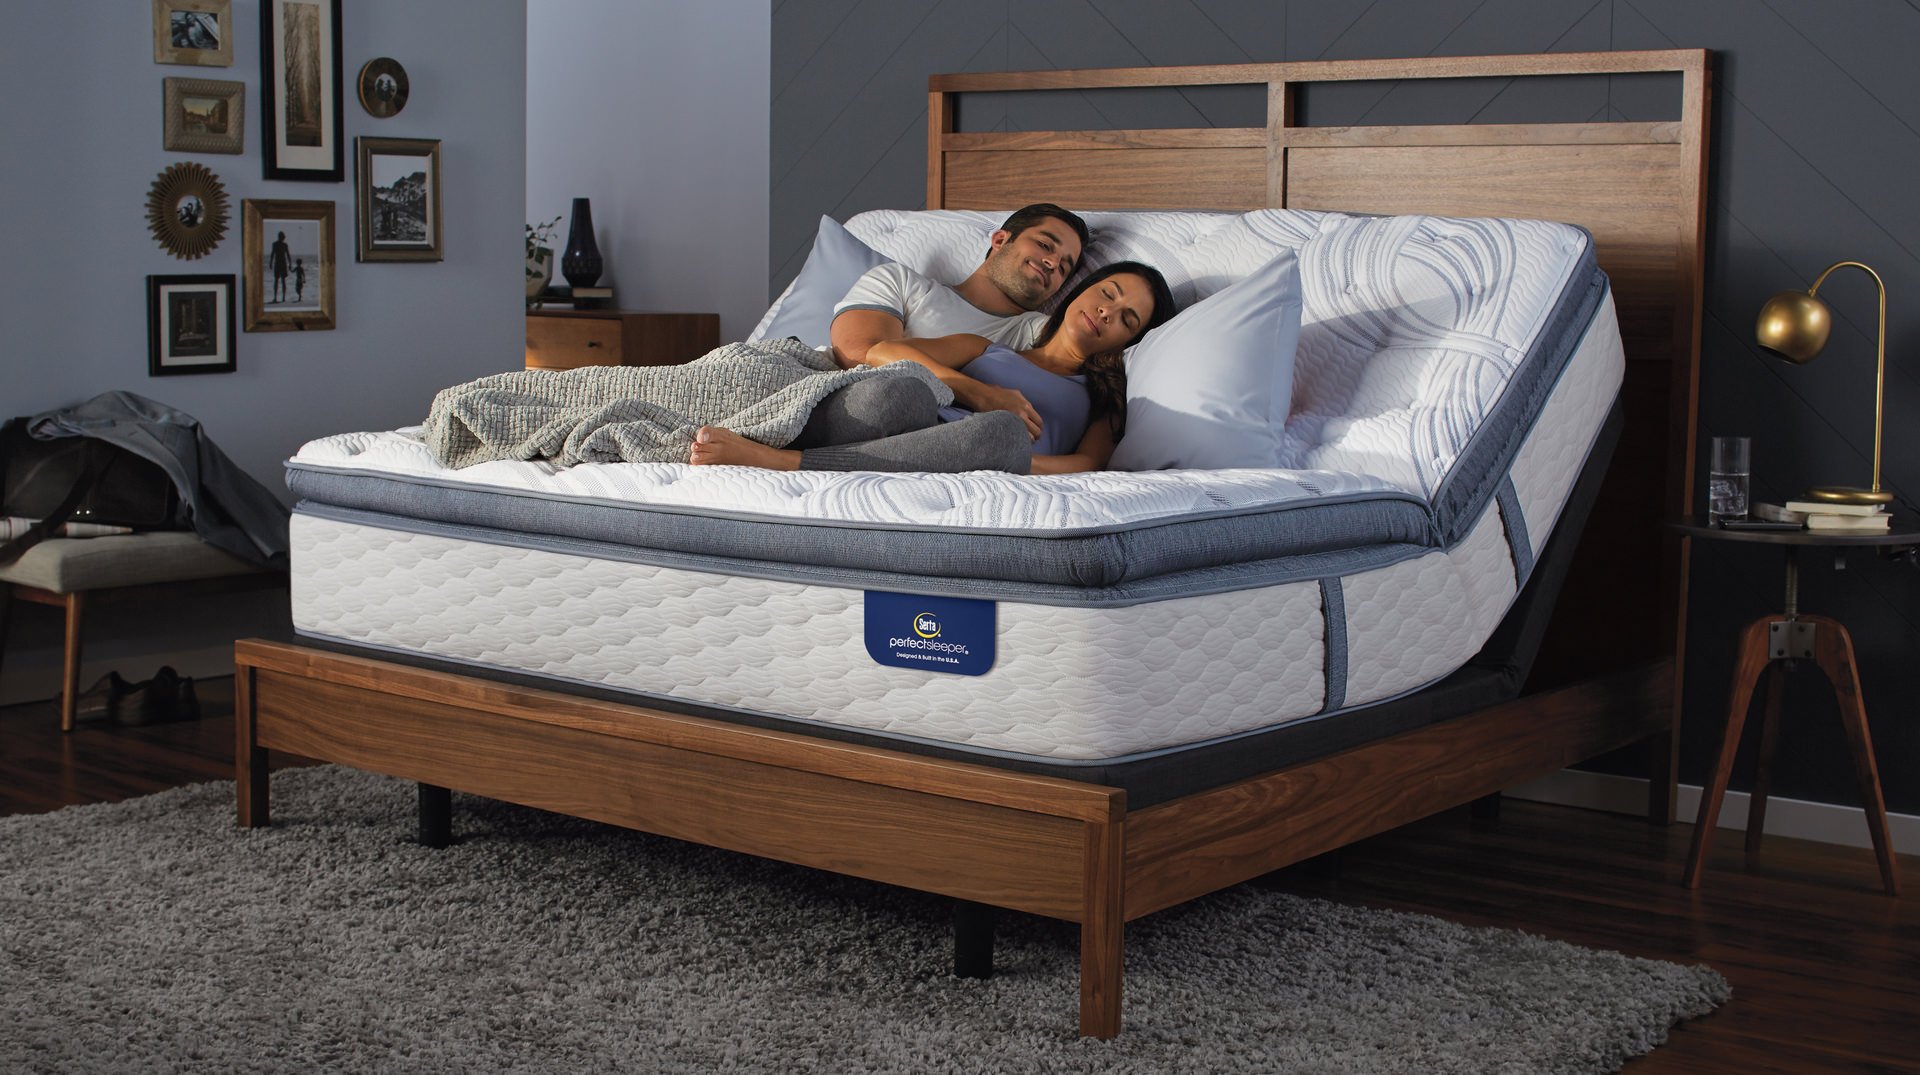 Adjust the Way You Sleep with Adjustable Beds